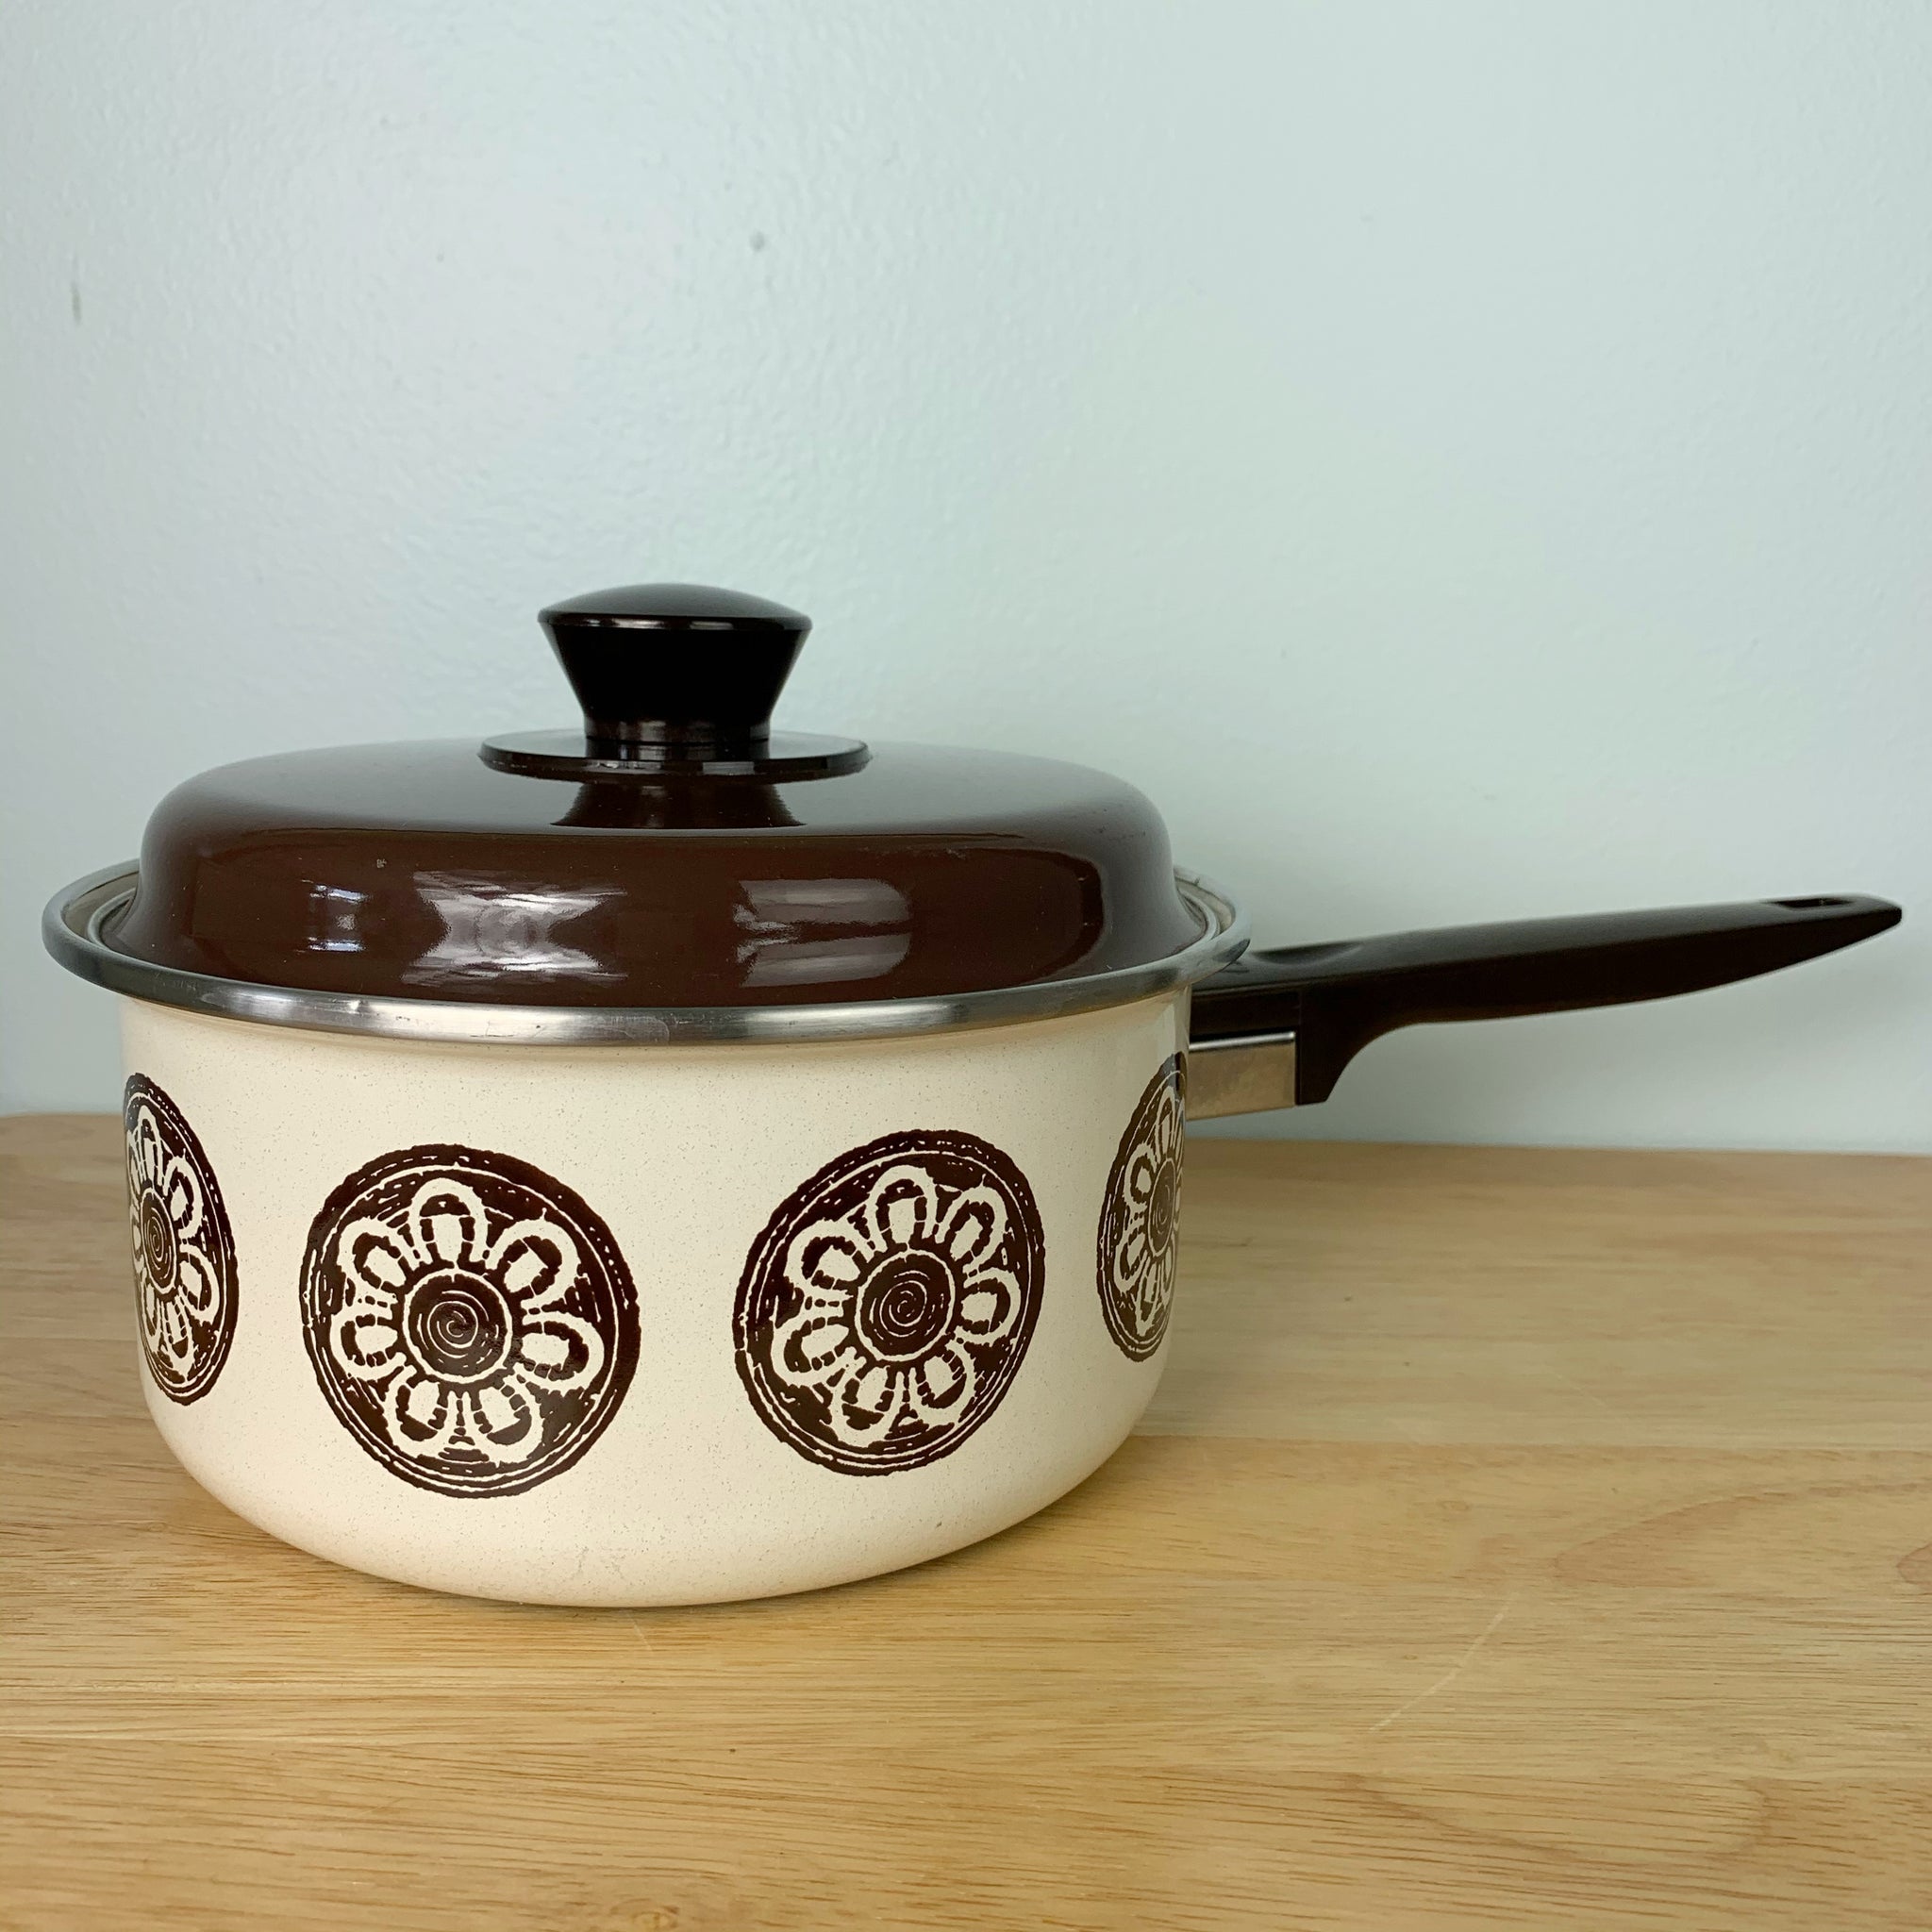 Vintage Porcelain Enamel Cookware Retro Enamelware Lincoware Orchard Royale  2.5 Quart Dutch Oven Enamel Pot With Lid Vintage Kitchen 